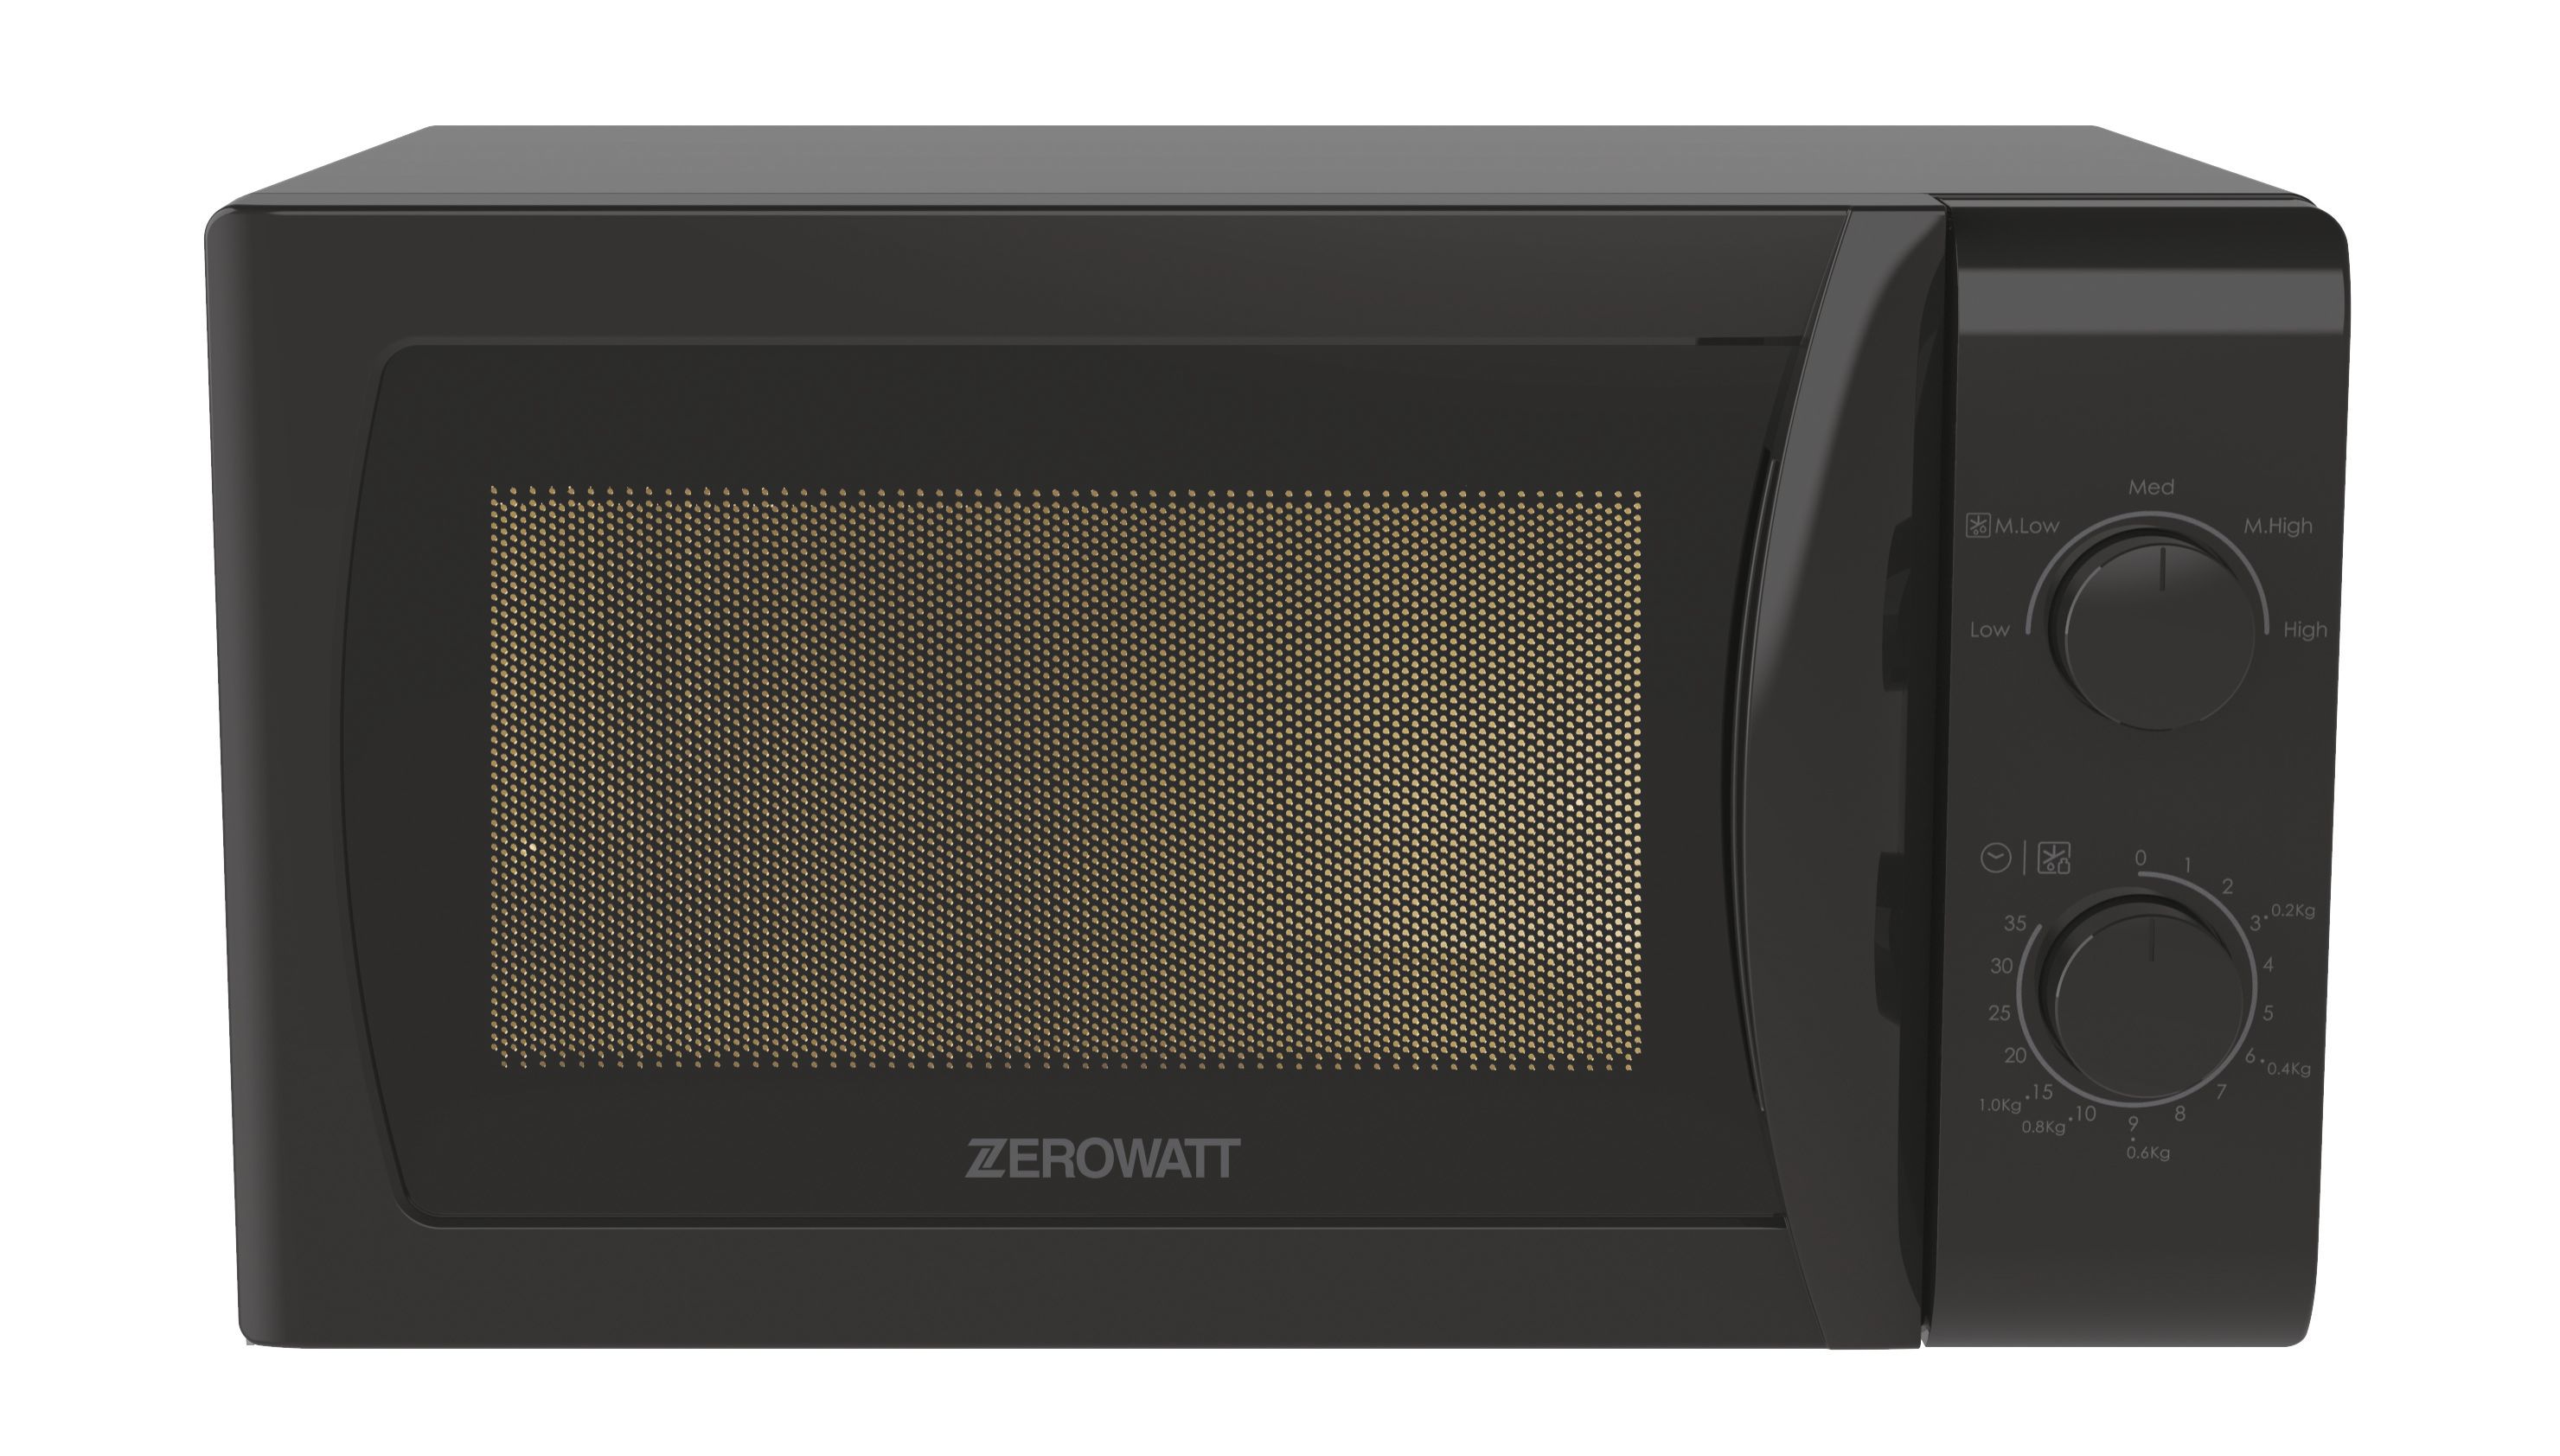 Микроволновая печь Zerowatt Zmw20smb-07, цвет черный